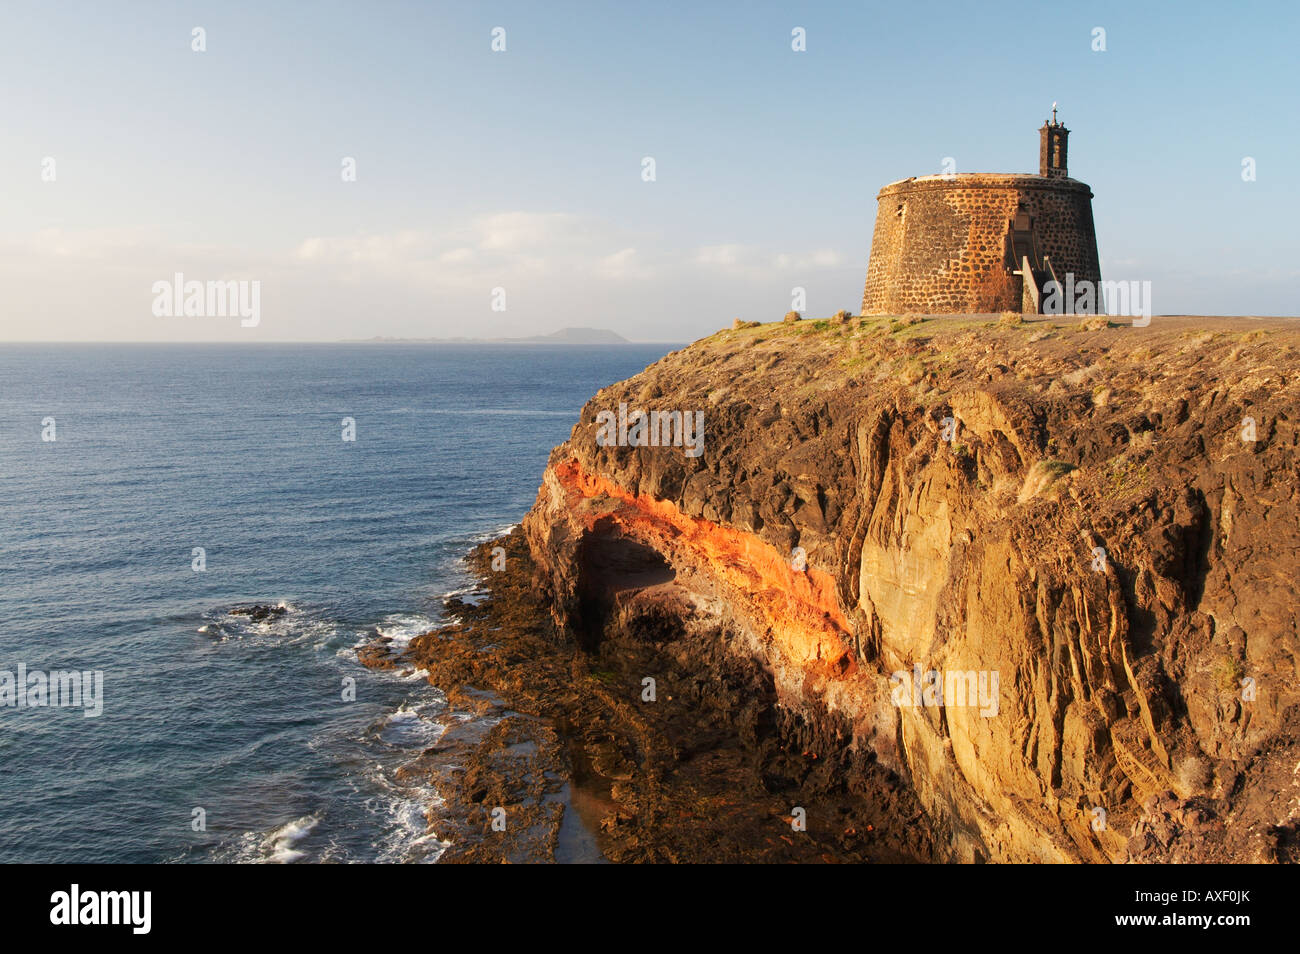 Castillo de Las Coloradas near Playa Blanca on Lanzatote in the Canary islands. Stock Photo